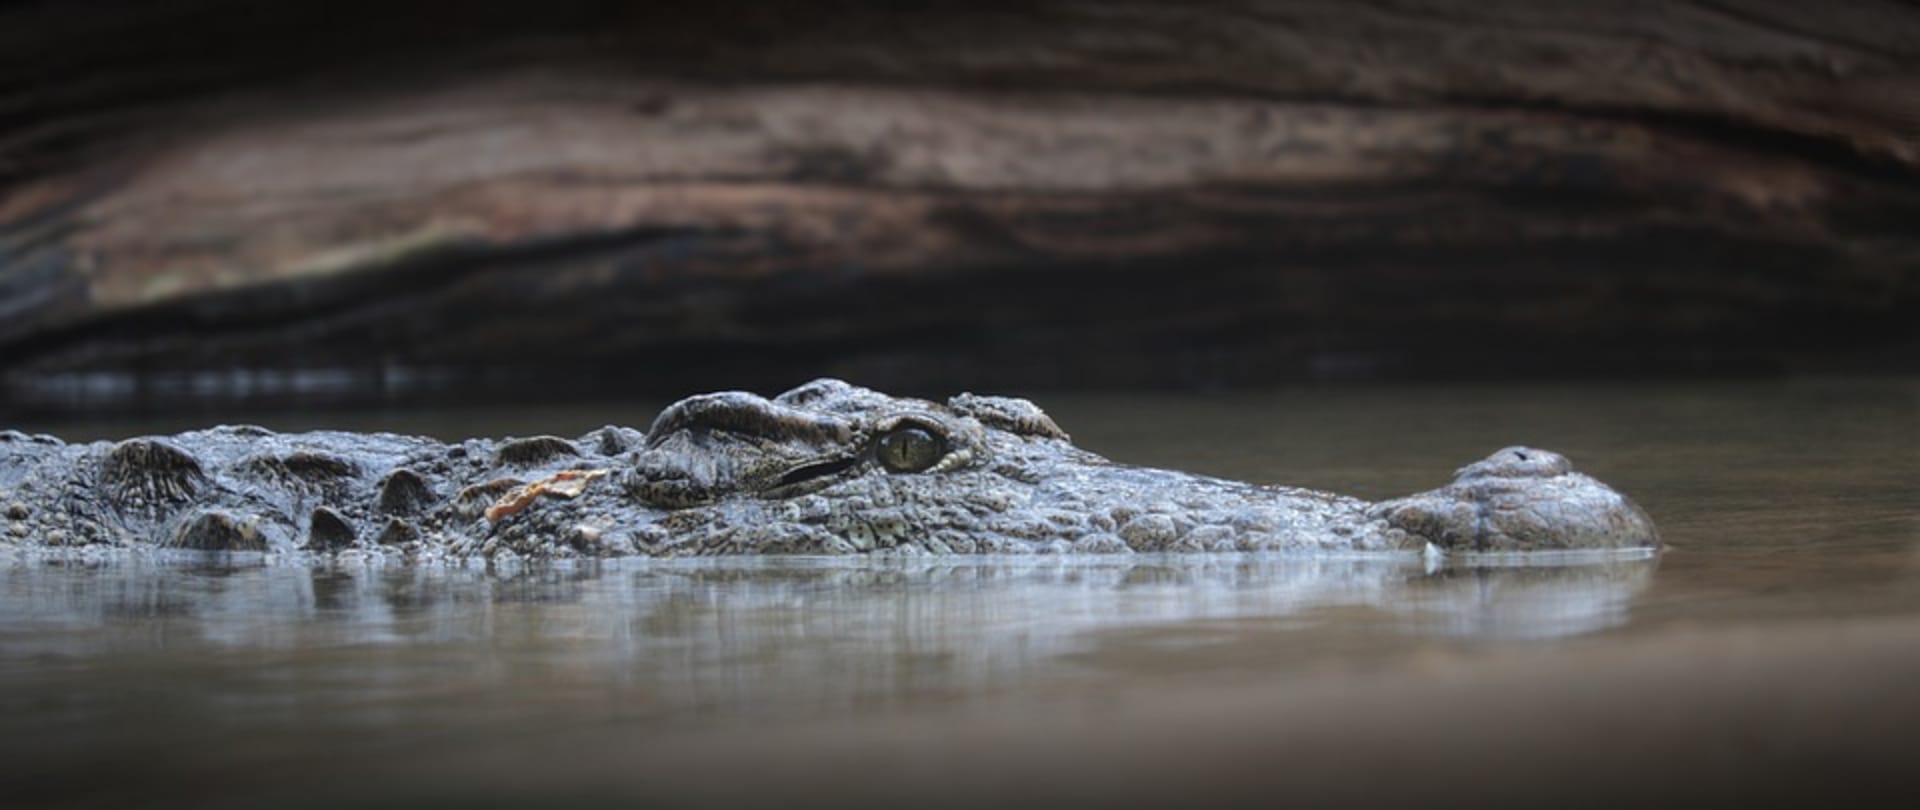 Na Amelii, která si užívala jízdu na raftu na řece Zambezi, zaútočil krokodýl a stáhl ji pod vodu. 